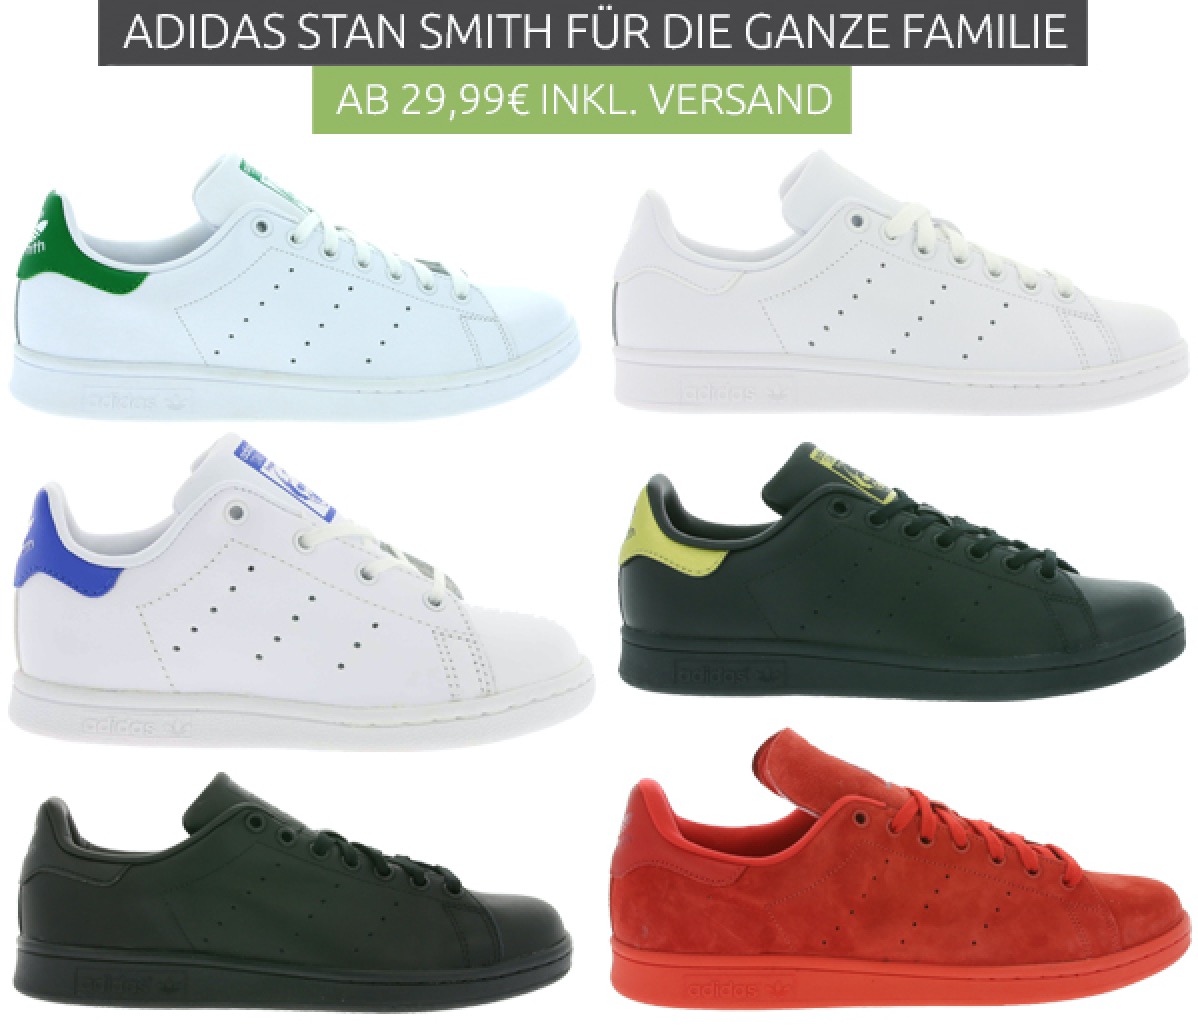 Verschiedene Adidas Originals Stan Smith Modelle ab 24,99 Euro inkl. Versand